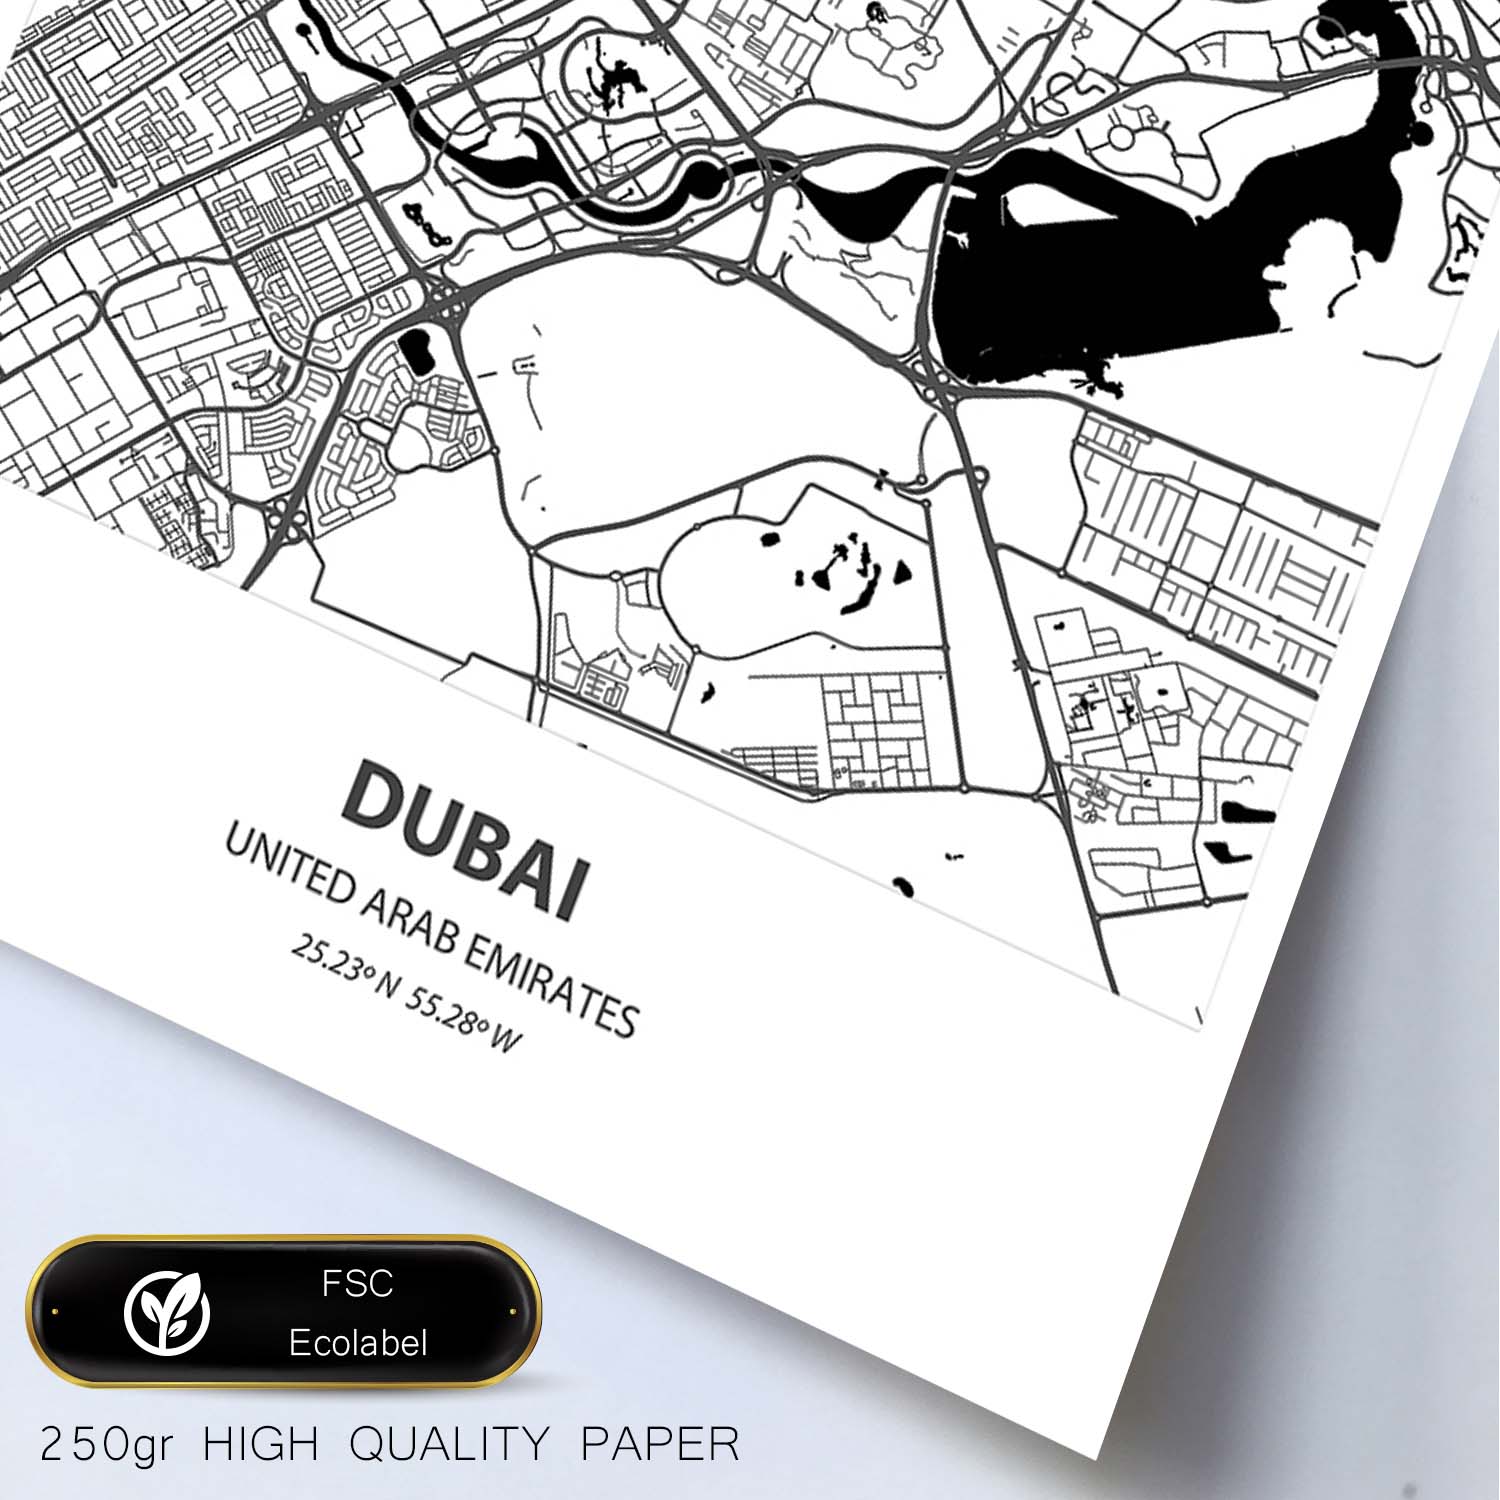 Poster con mapa de Dubai - Emiratos Arabes Unidos. Láminas de ciudades de Oriente Medio con mares y ríos en color negro.-Artwork-Nacnic-Nacnic Estudio SL